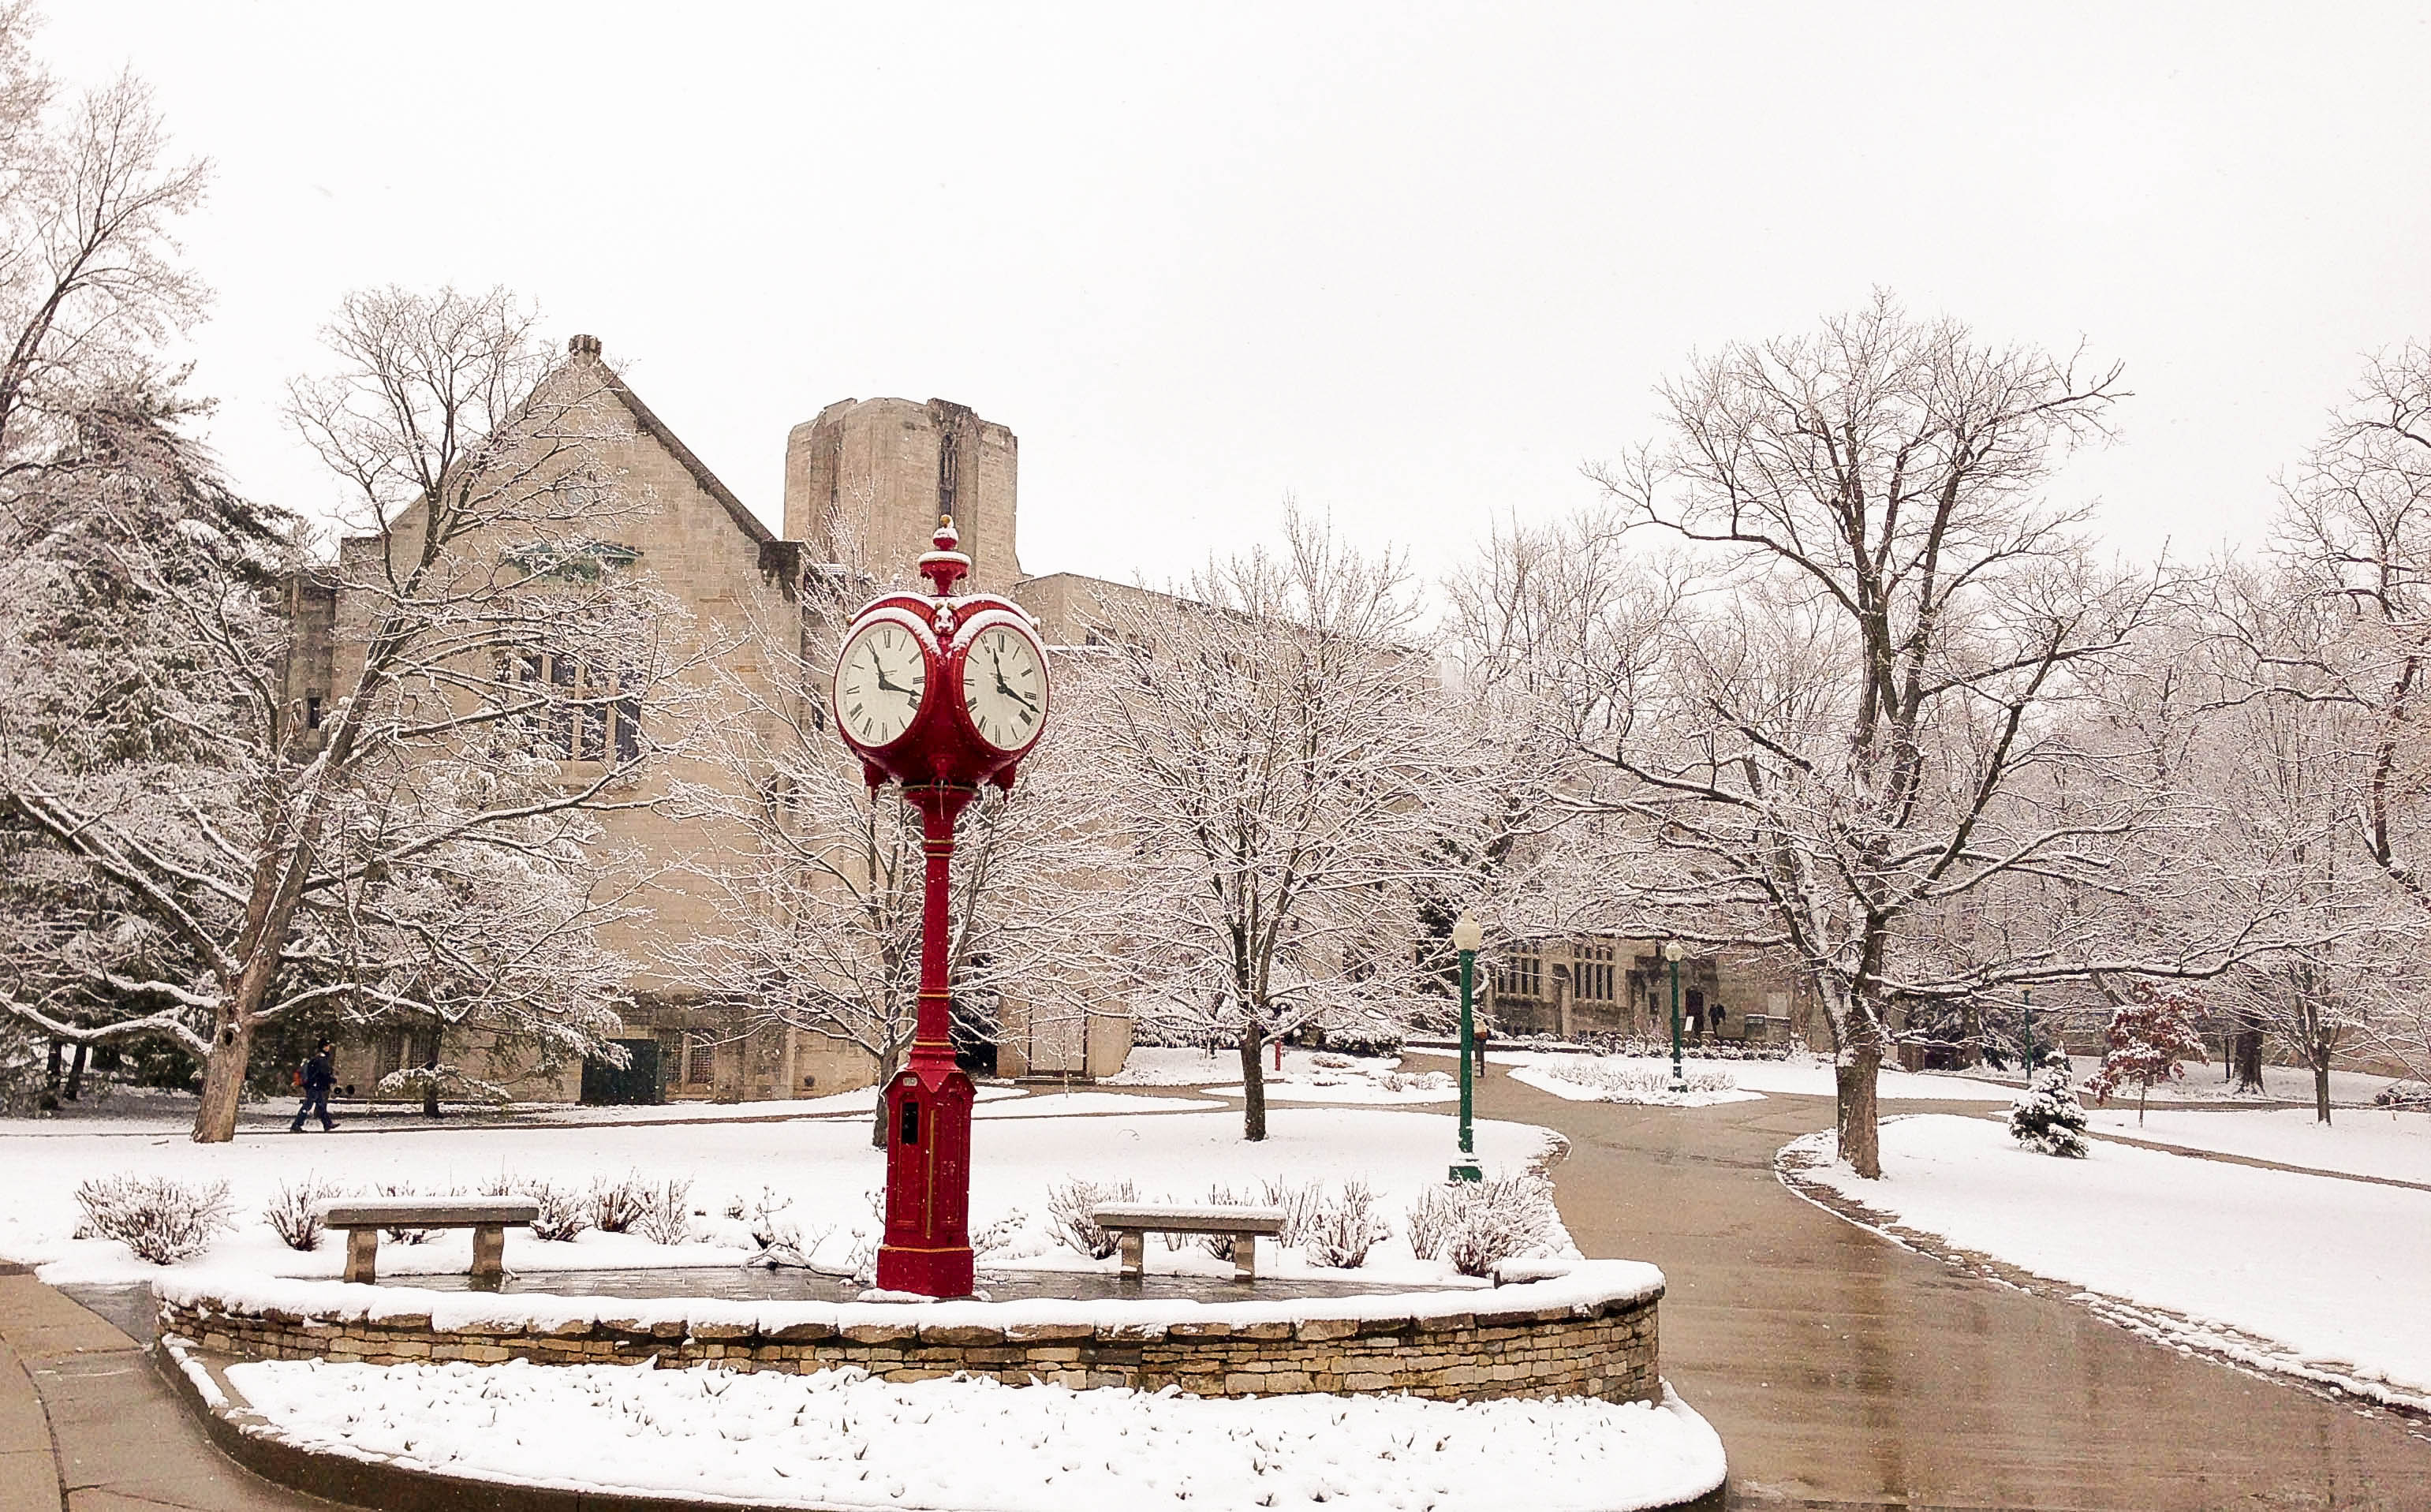 Đồng hồ đỏ nổi bật giữa trời tuyết có mặt ở khắp nơi trong campus